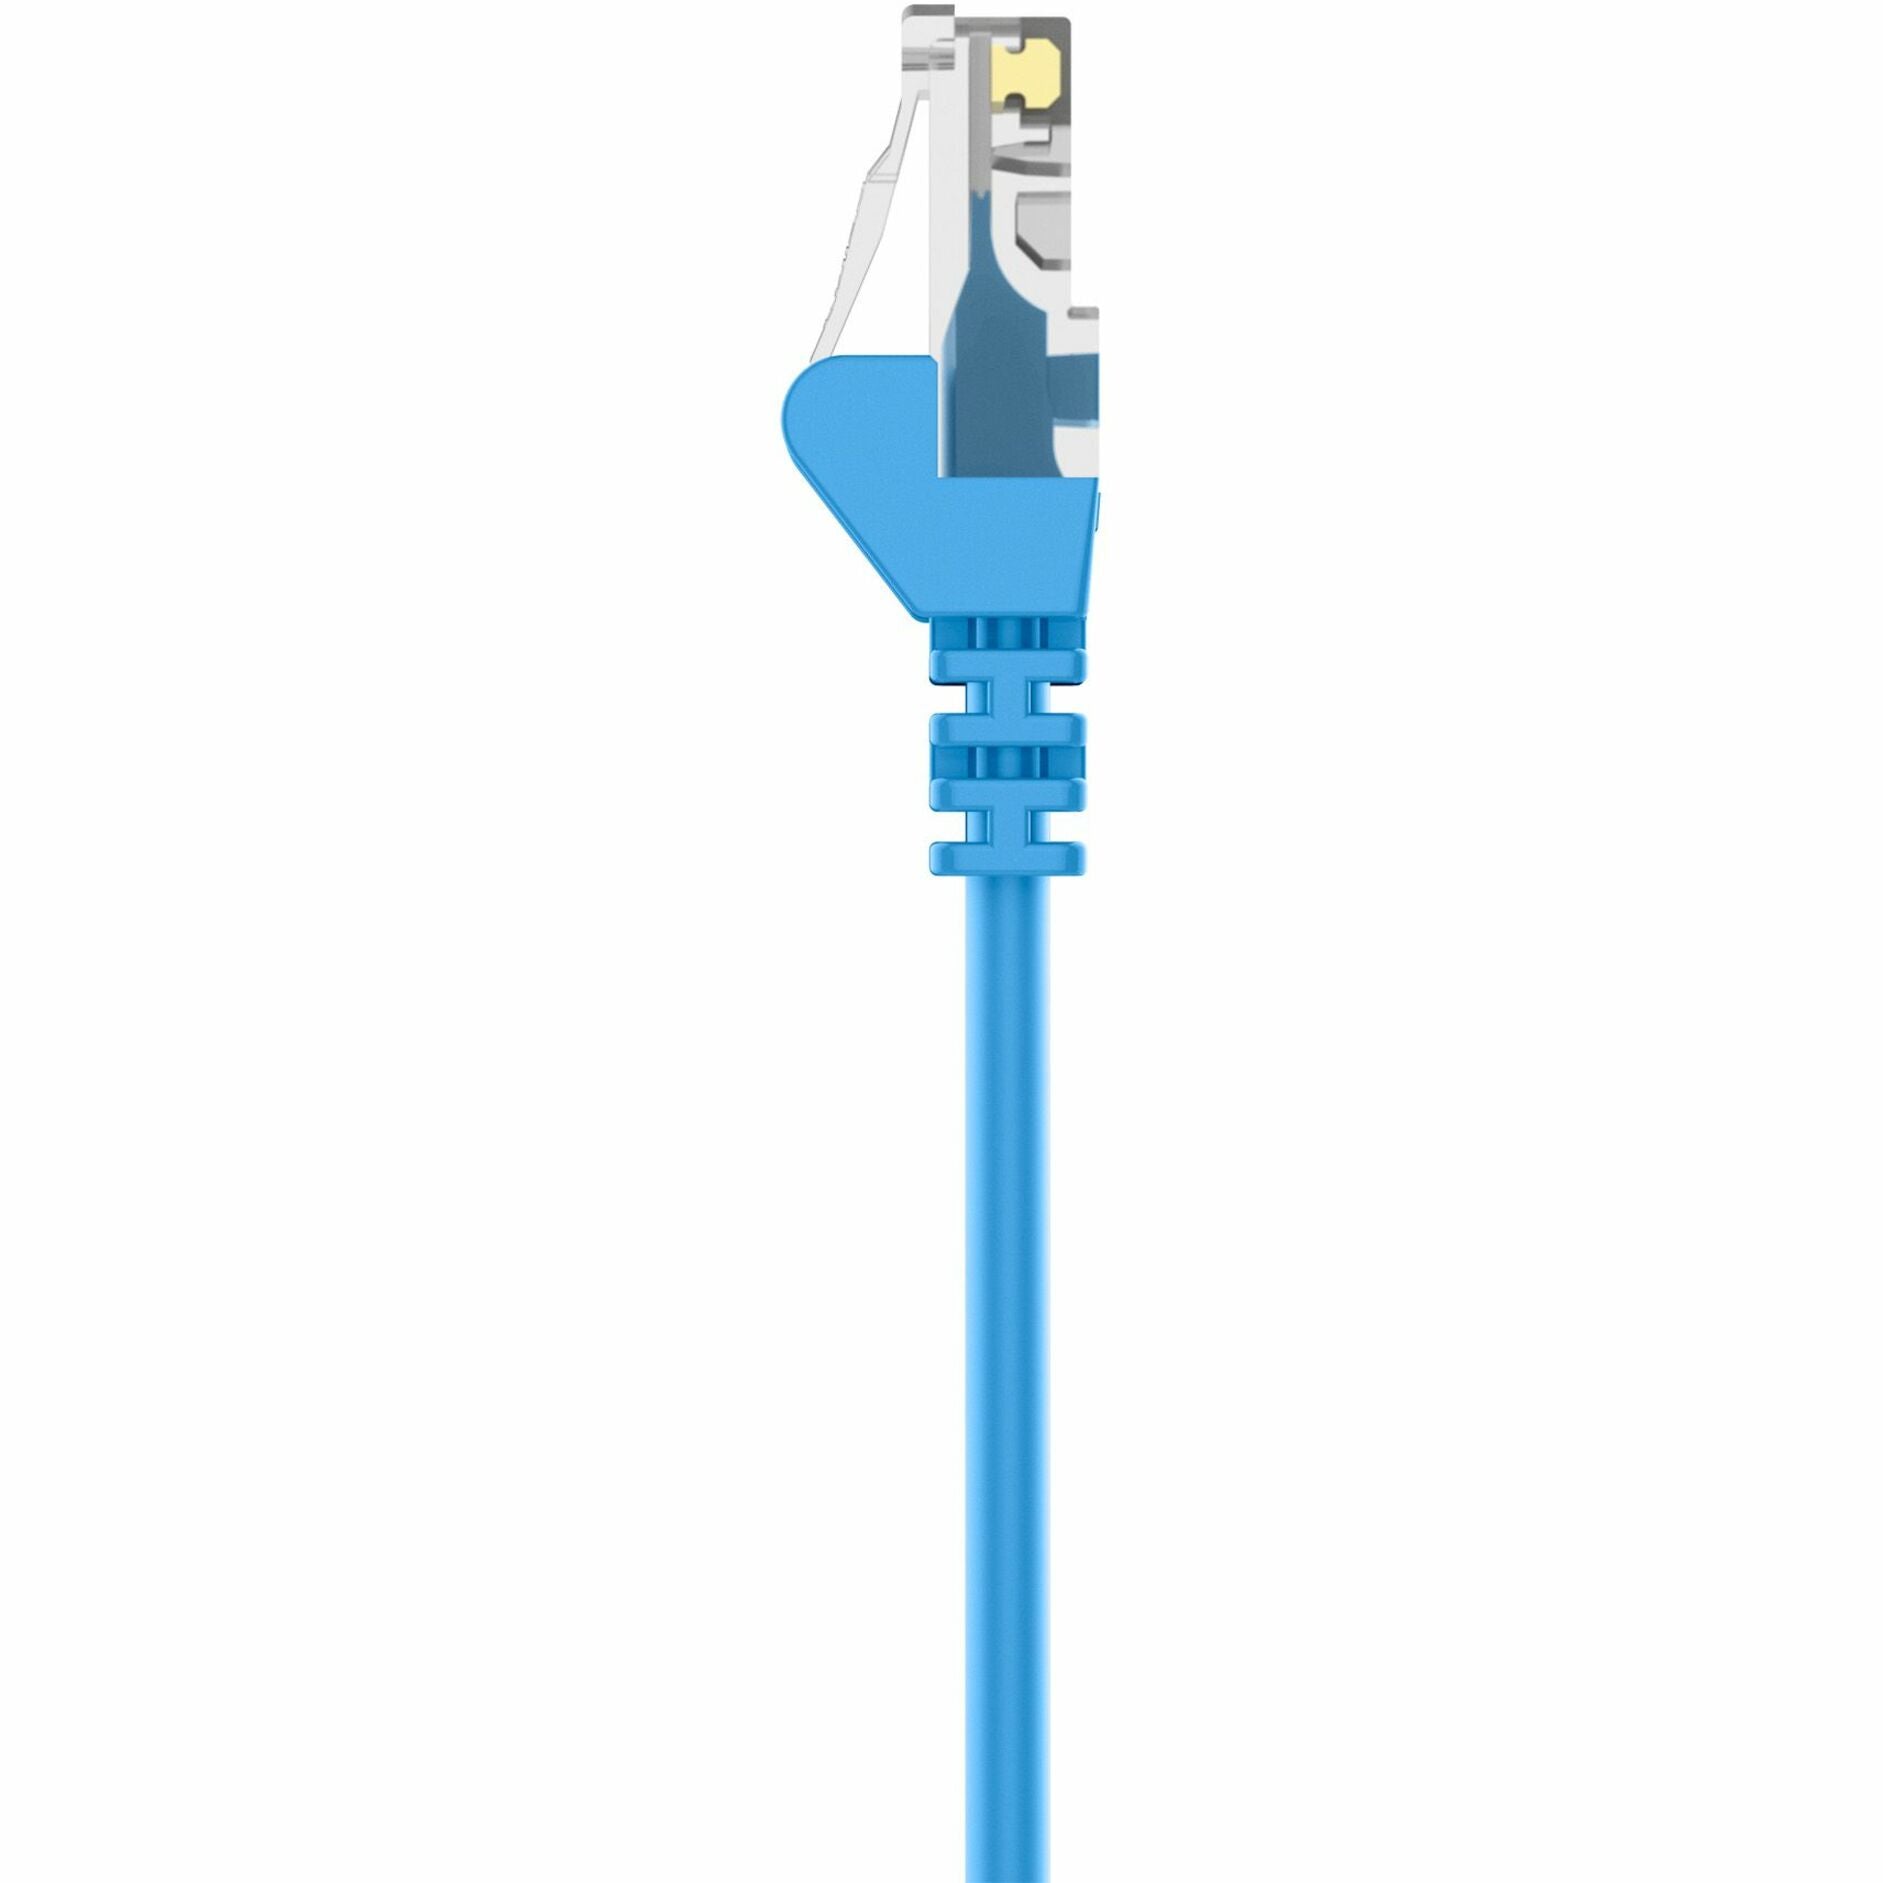 Belkin A3X126-15-BLU-S Cat5e Crossover Cable, 15 ft, Blue, Lifetime Warranty